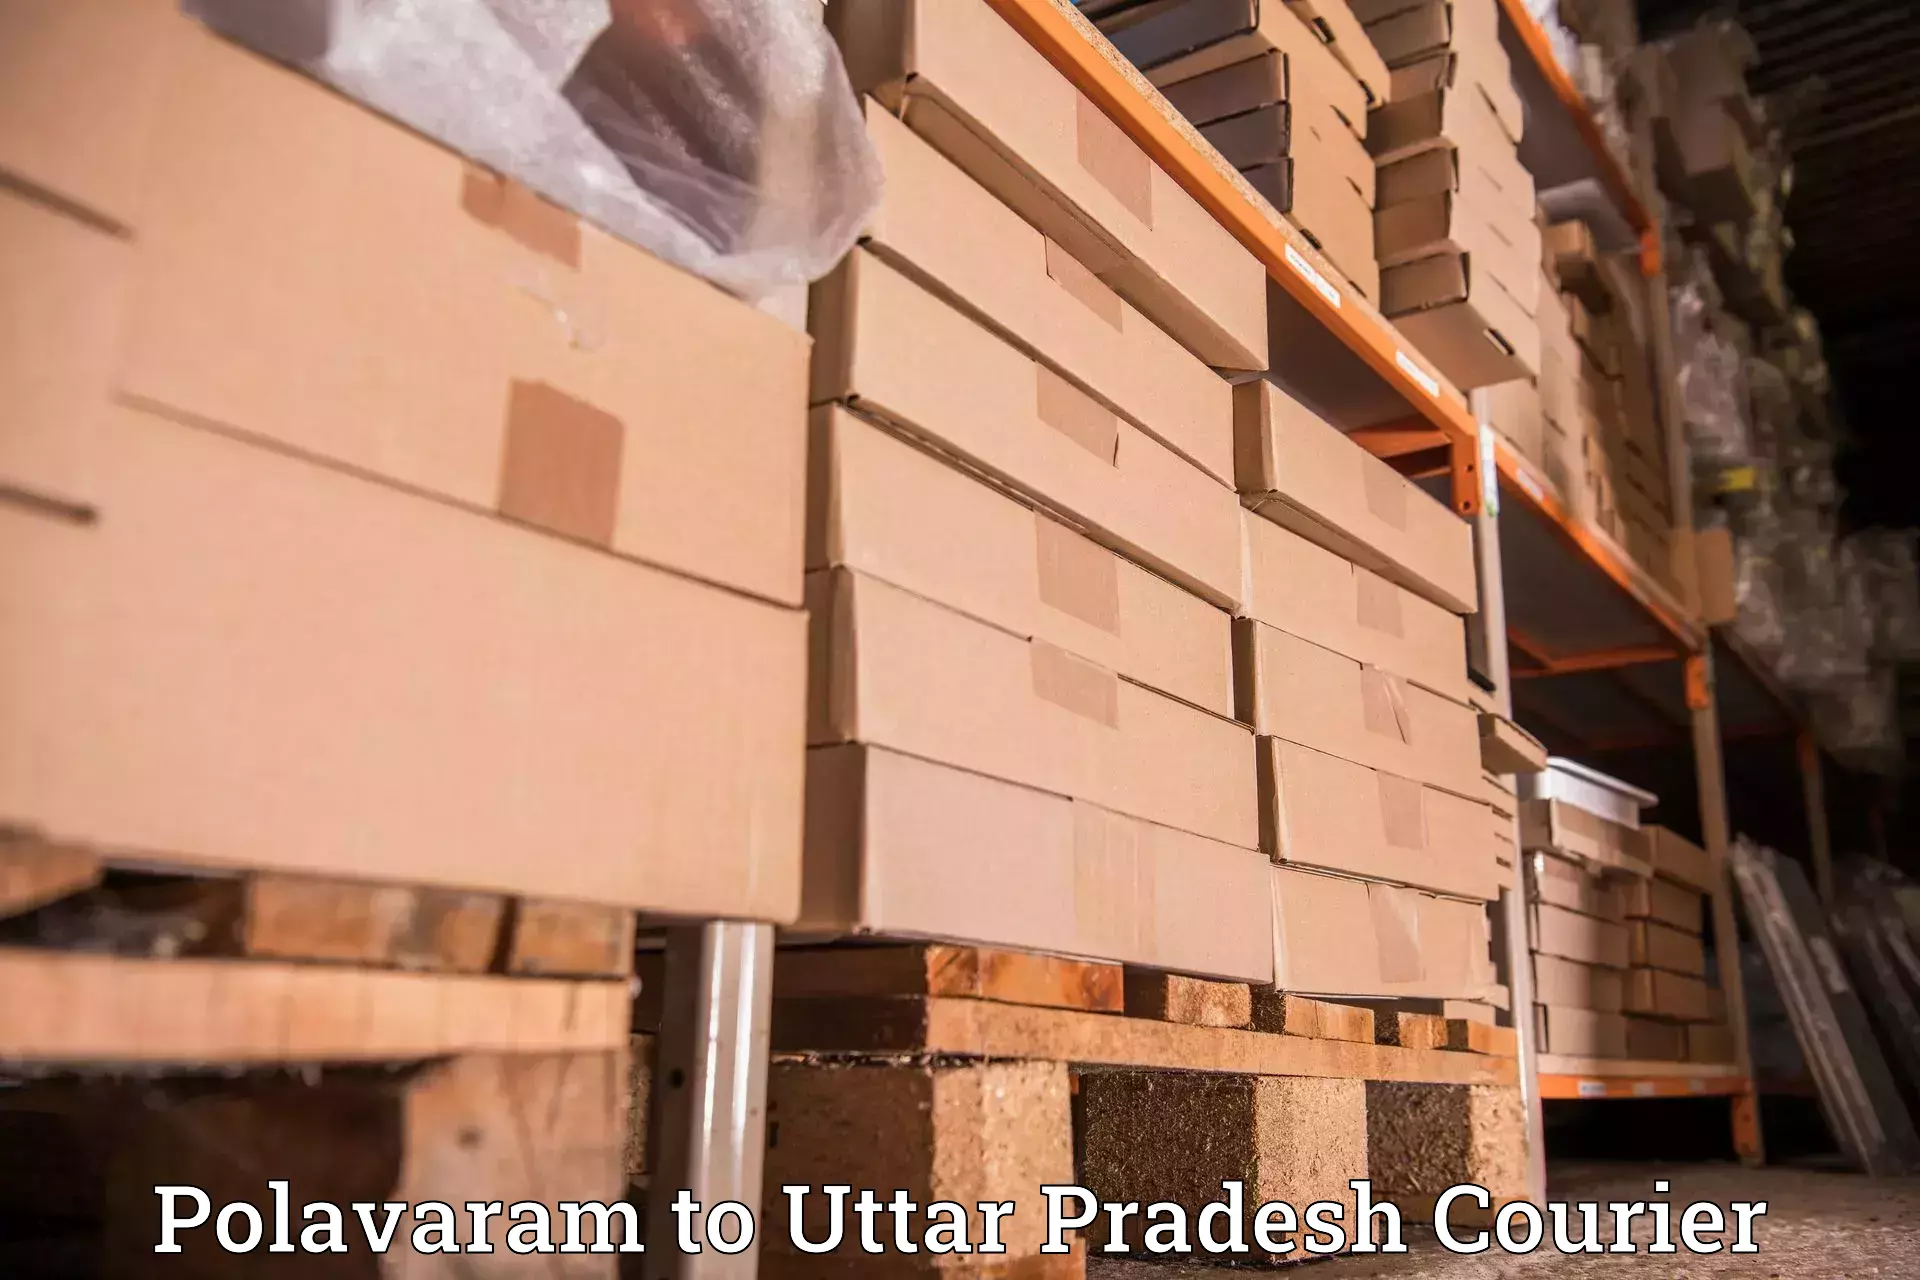 Next-day freight services Polavaram to Vrindavan